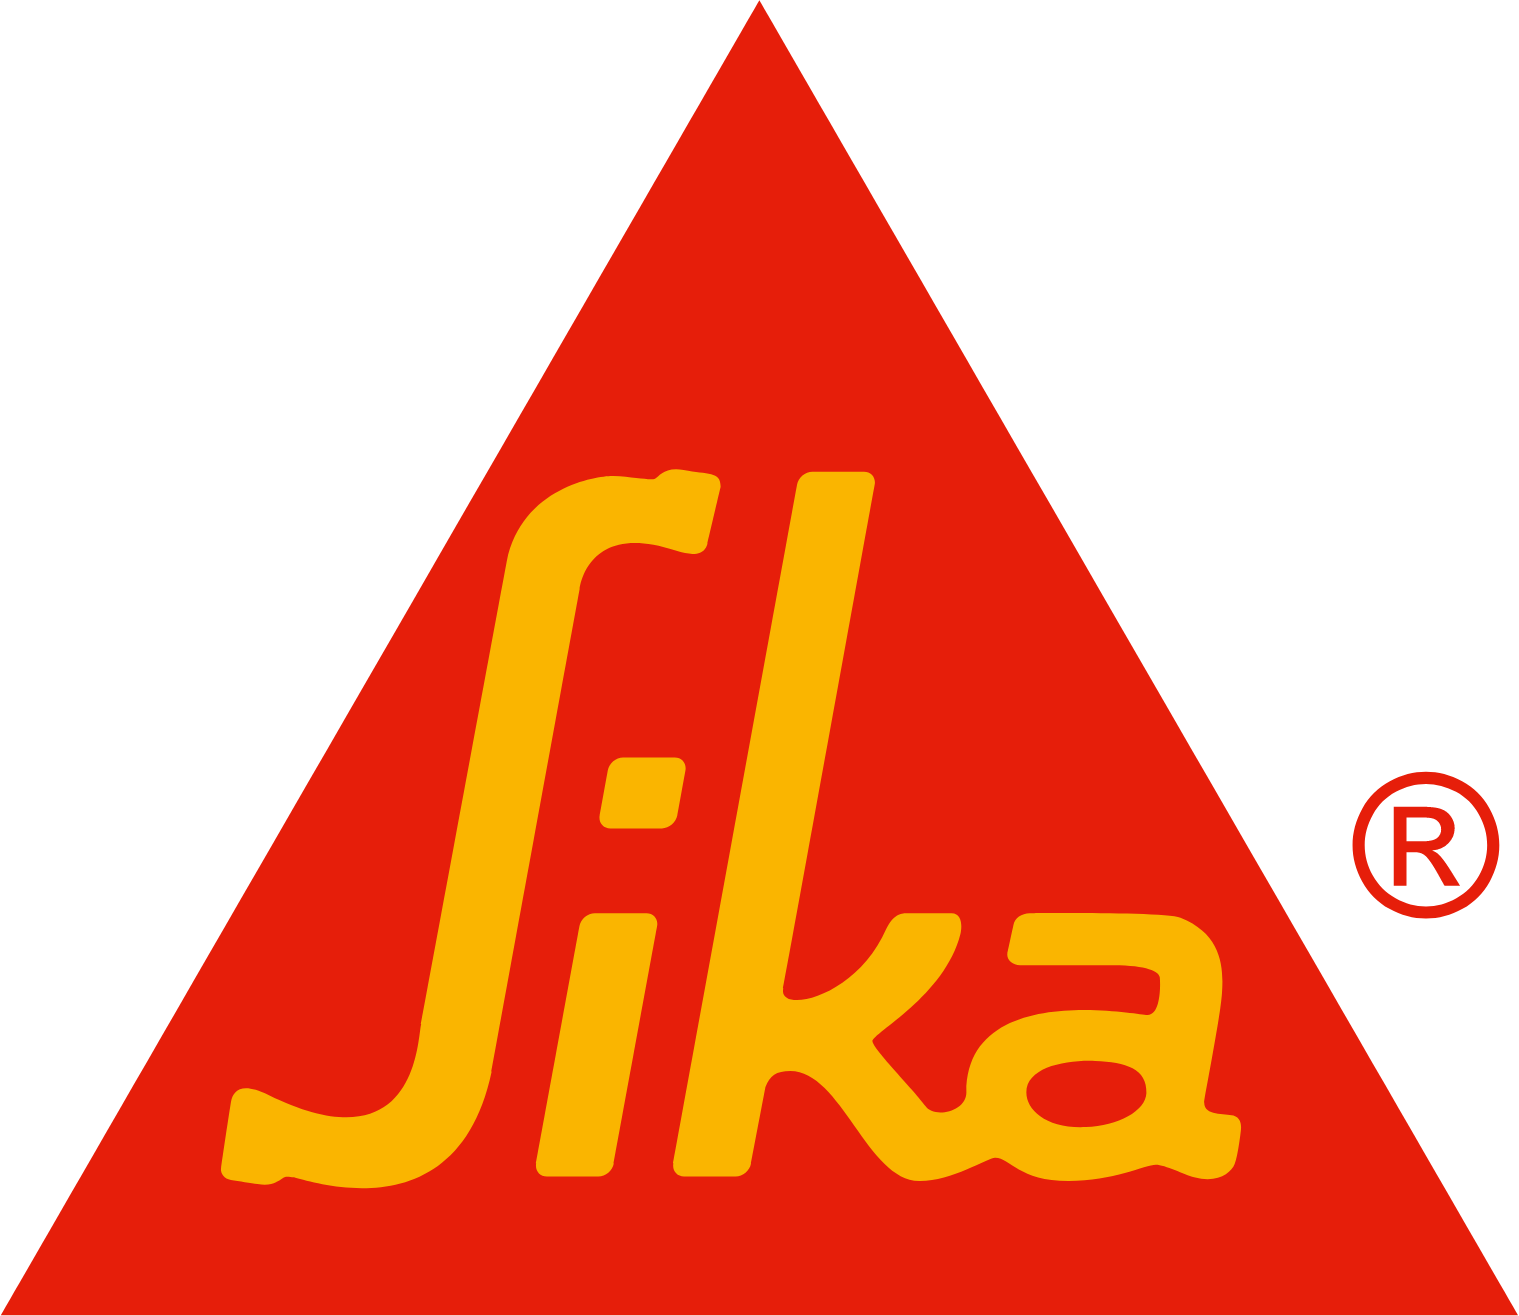 Sika logo large (transparent PNG)